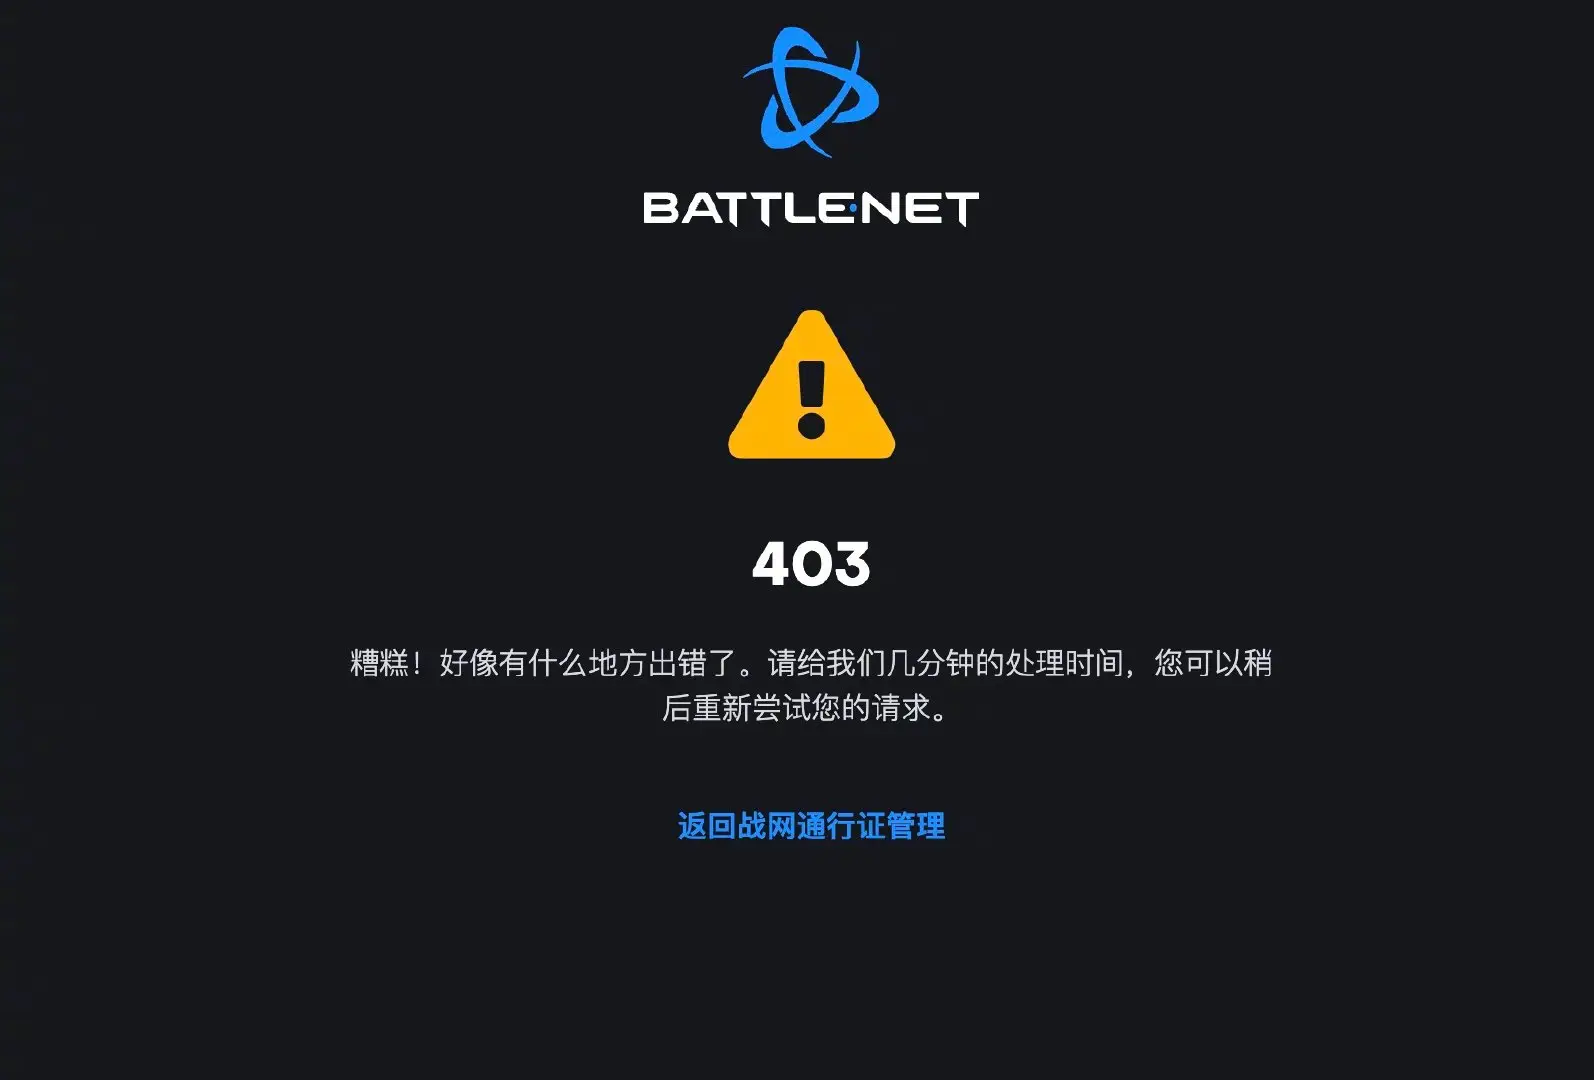 暴雪将在中国暂停多款游戏服务 暴雪娱乐最新声明_球天下体育